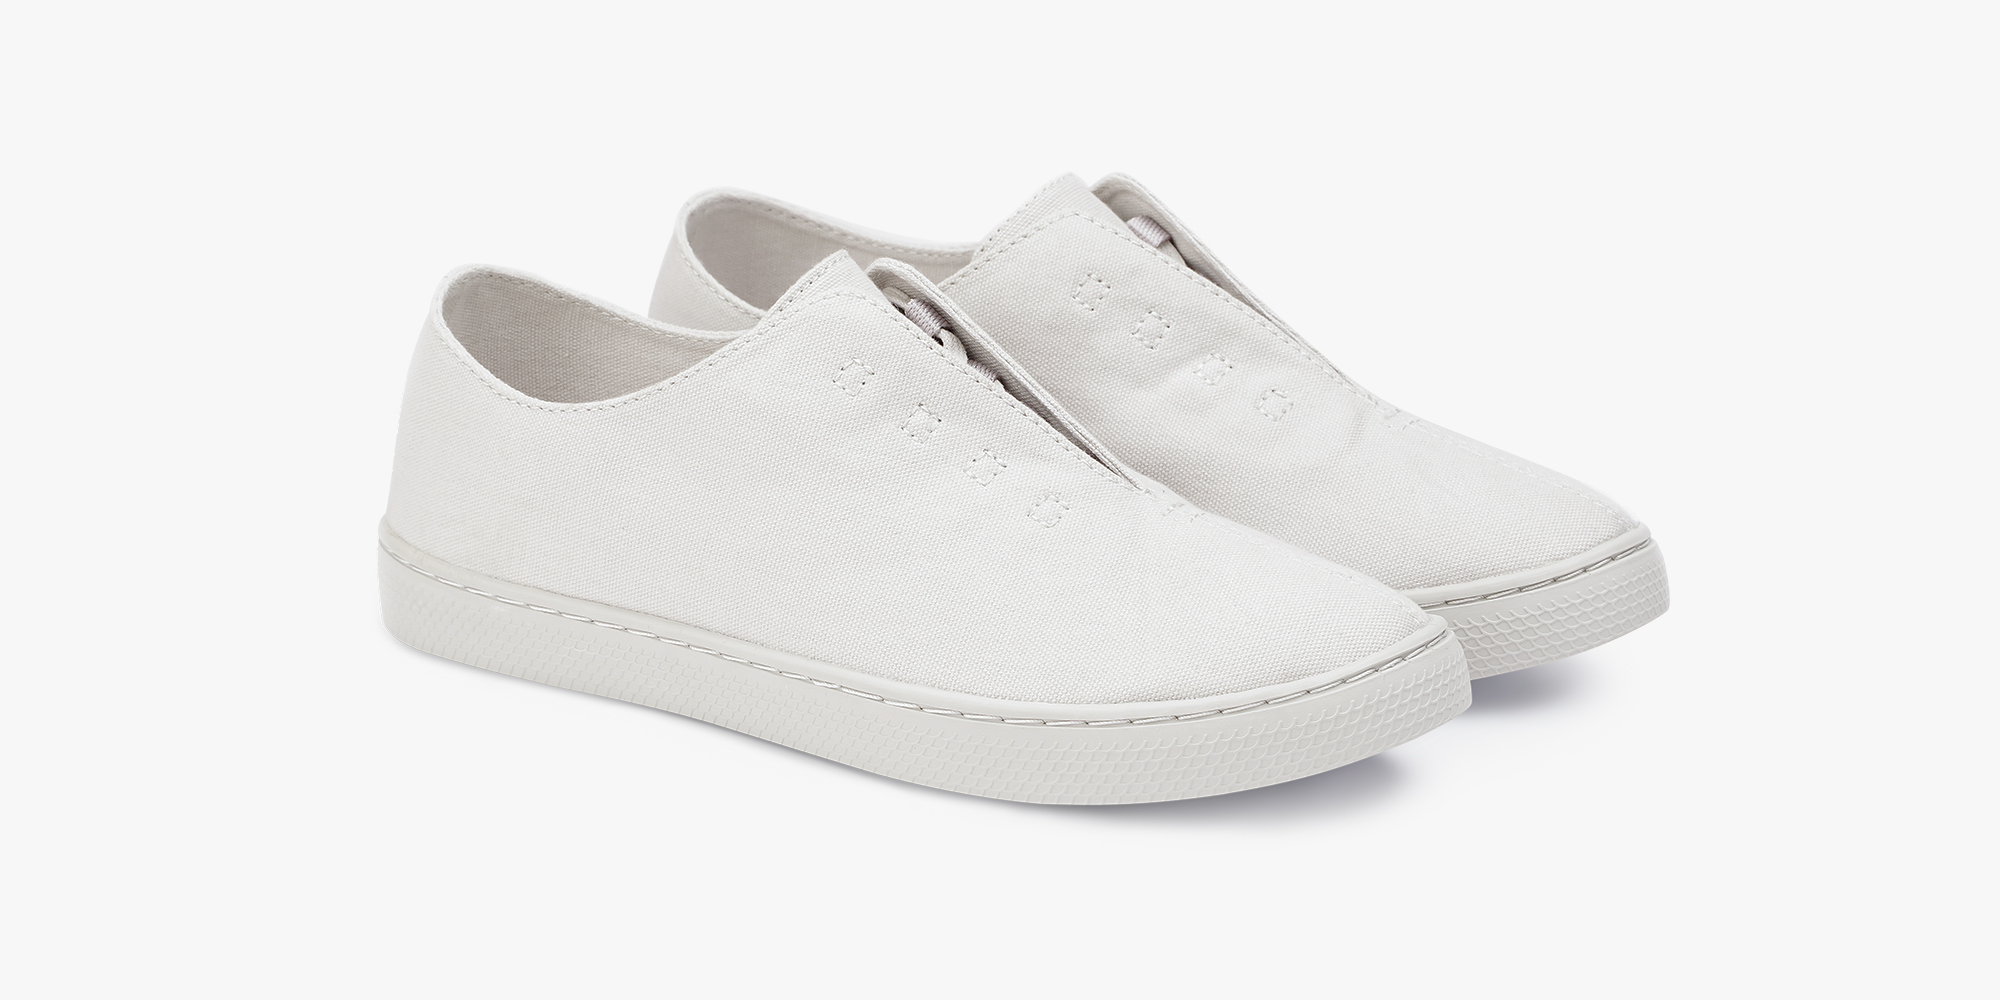 8 đôi sneakers trắng "made in Vietnam" chuẩn thời thượng, kết hợp được với mọi kiểu đồ và giá chỉ từ 350k - Ảnh 3.